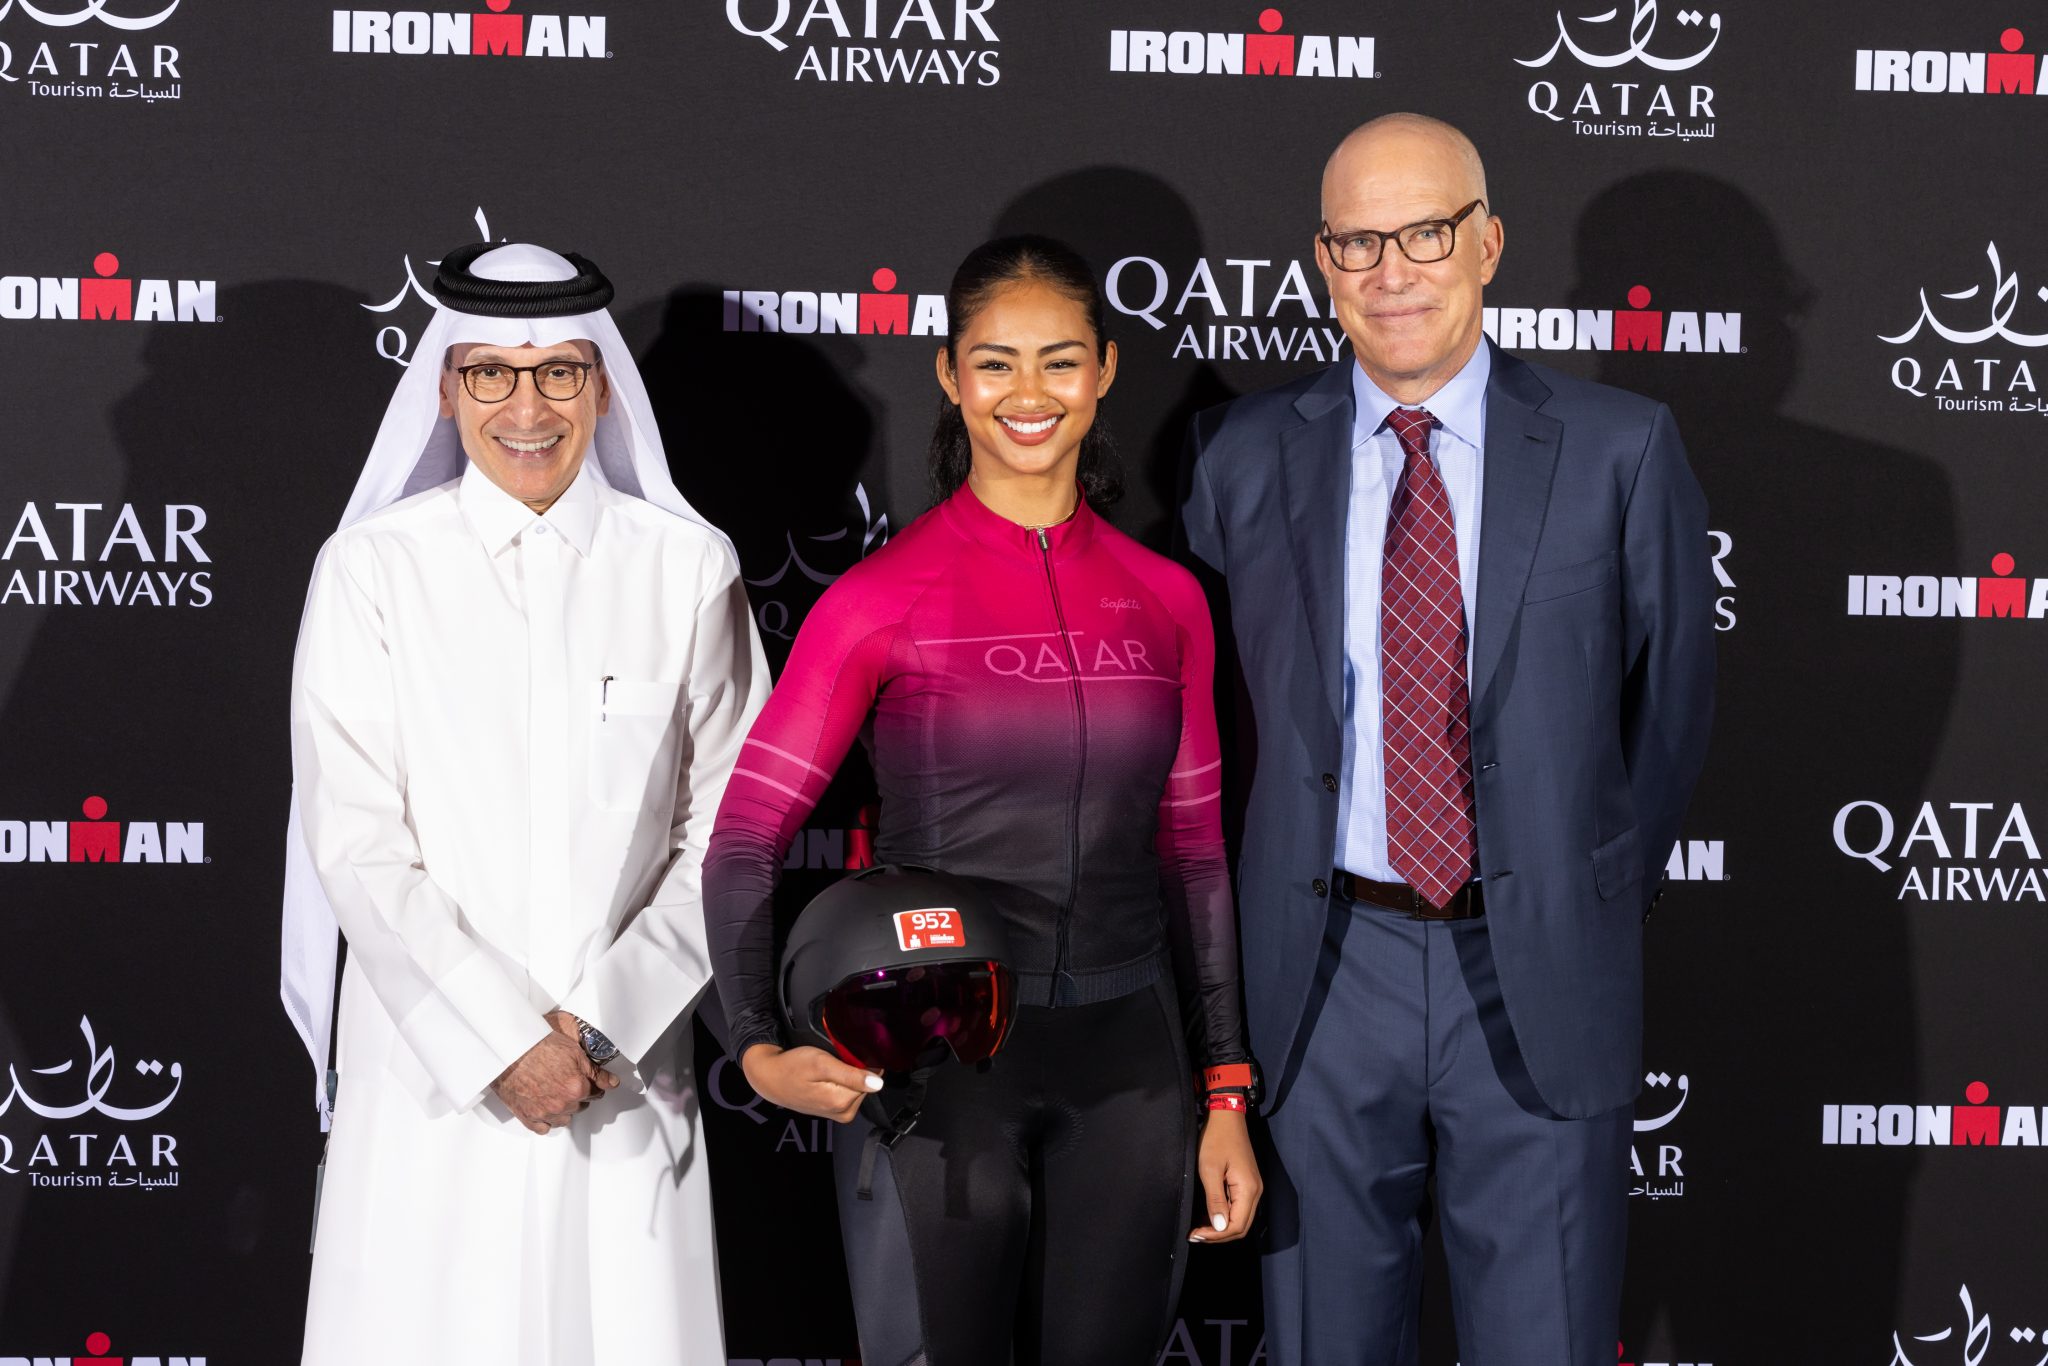 Qatar Airways se torna a companhia aérea oficial do Global Ironman e Ironman 70.3 series